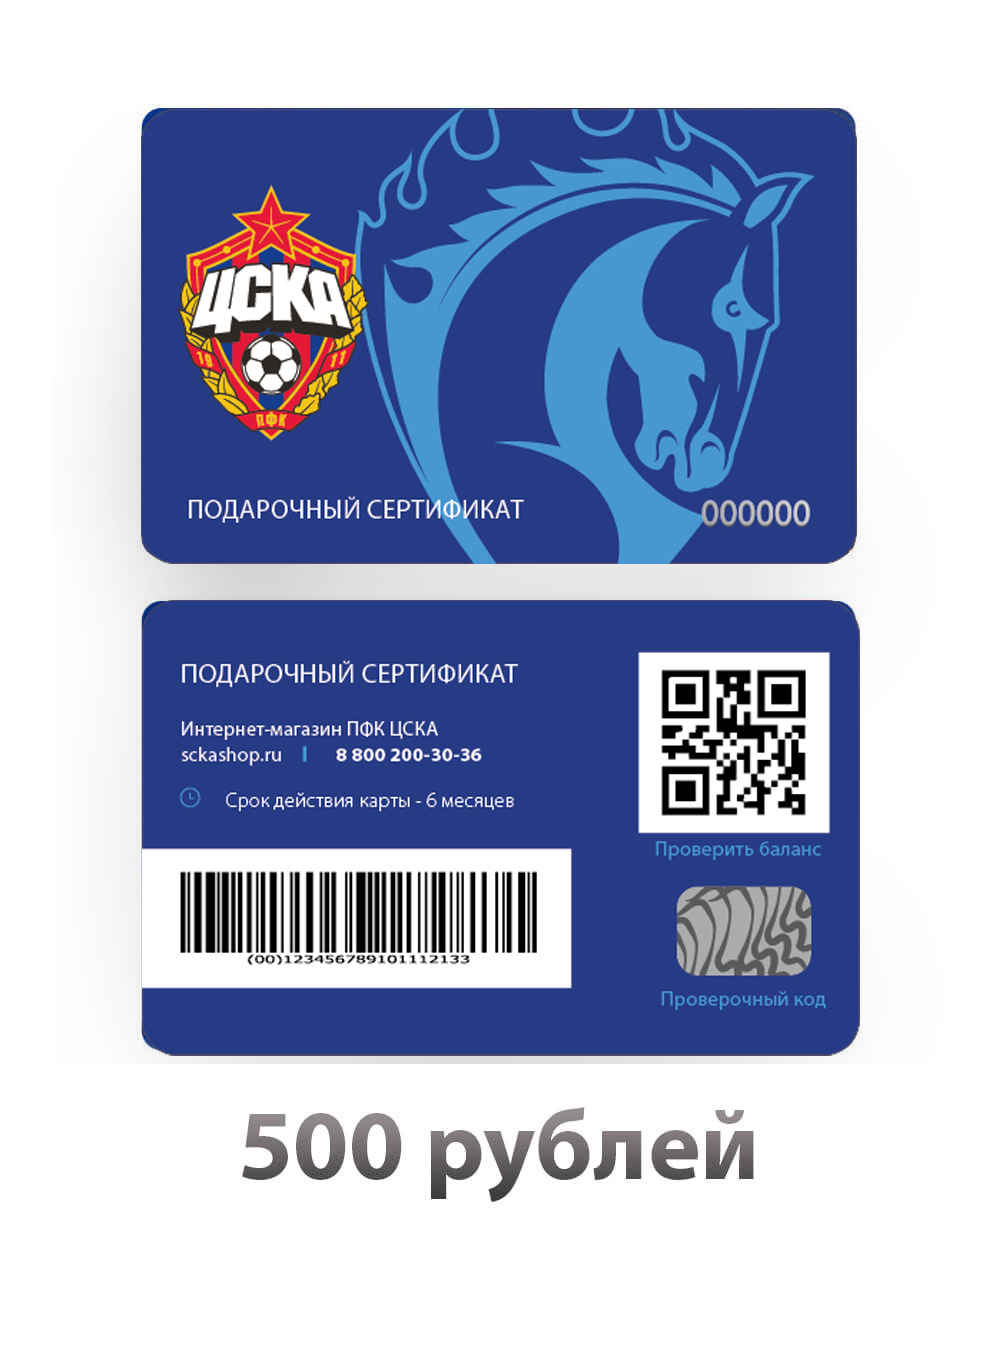 Подарочный сертификат на 500 рублей (Подарочная карта на 500 рублей) от Cskashop